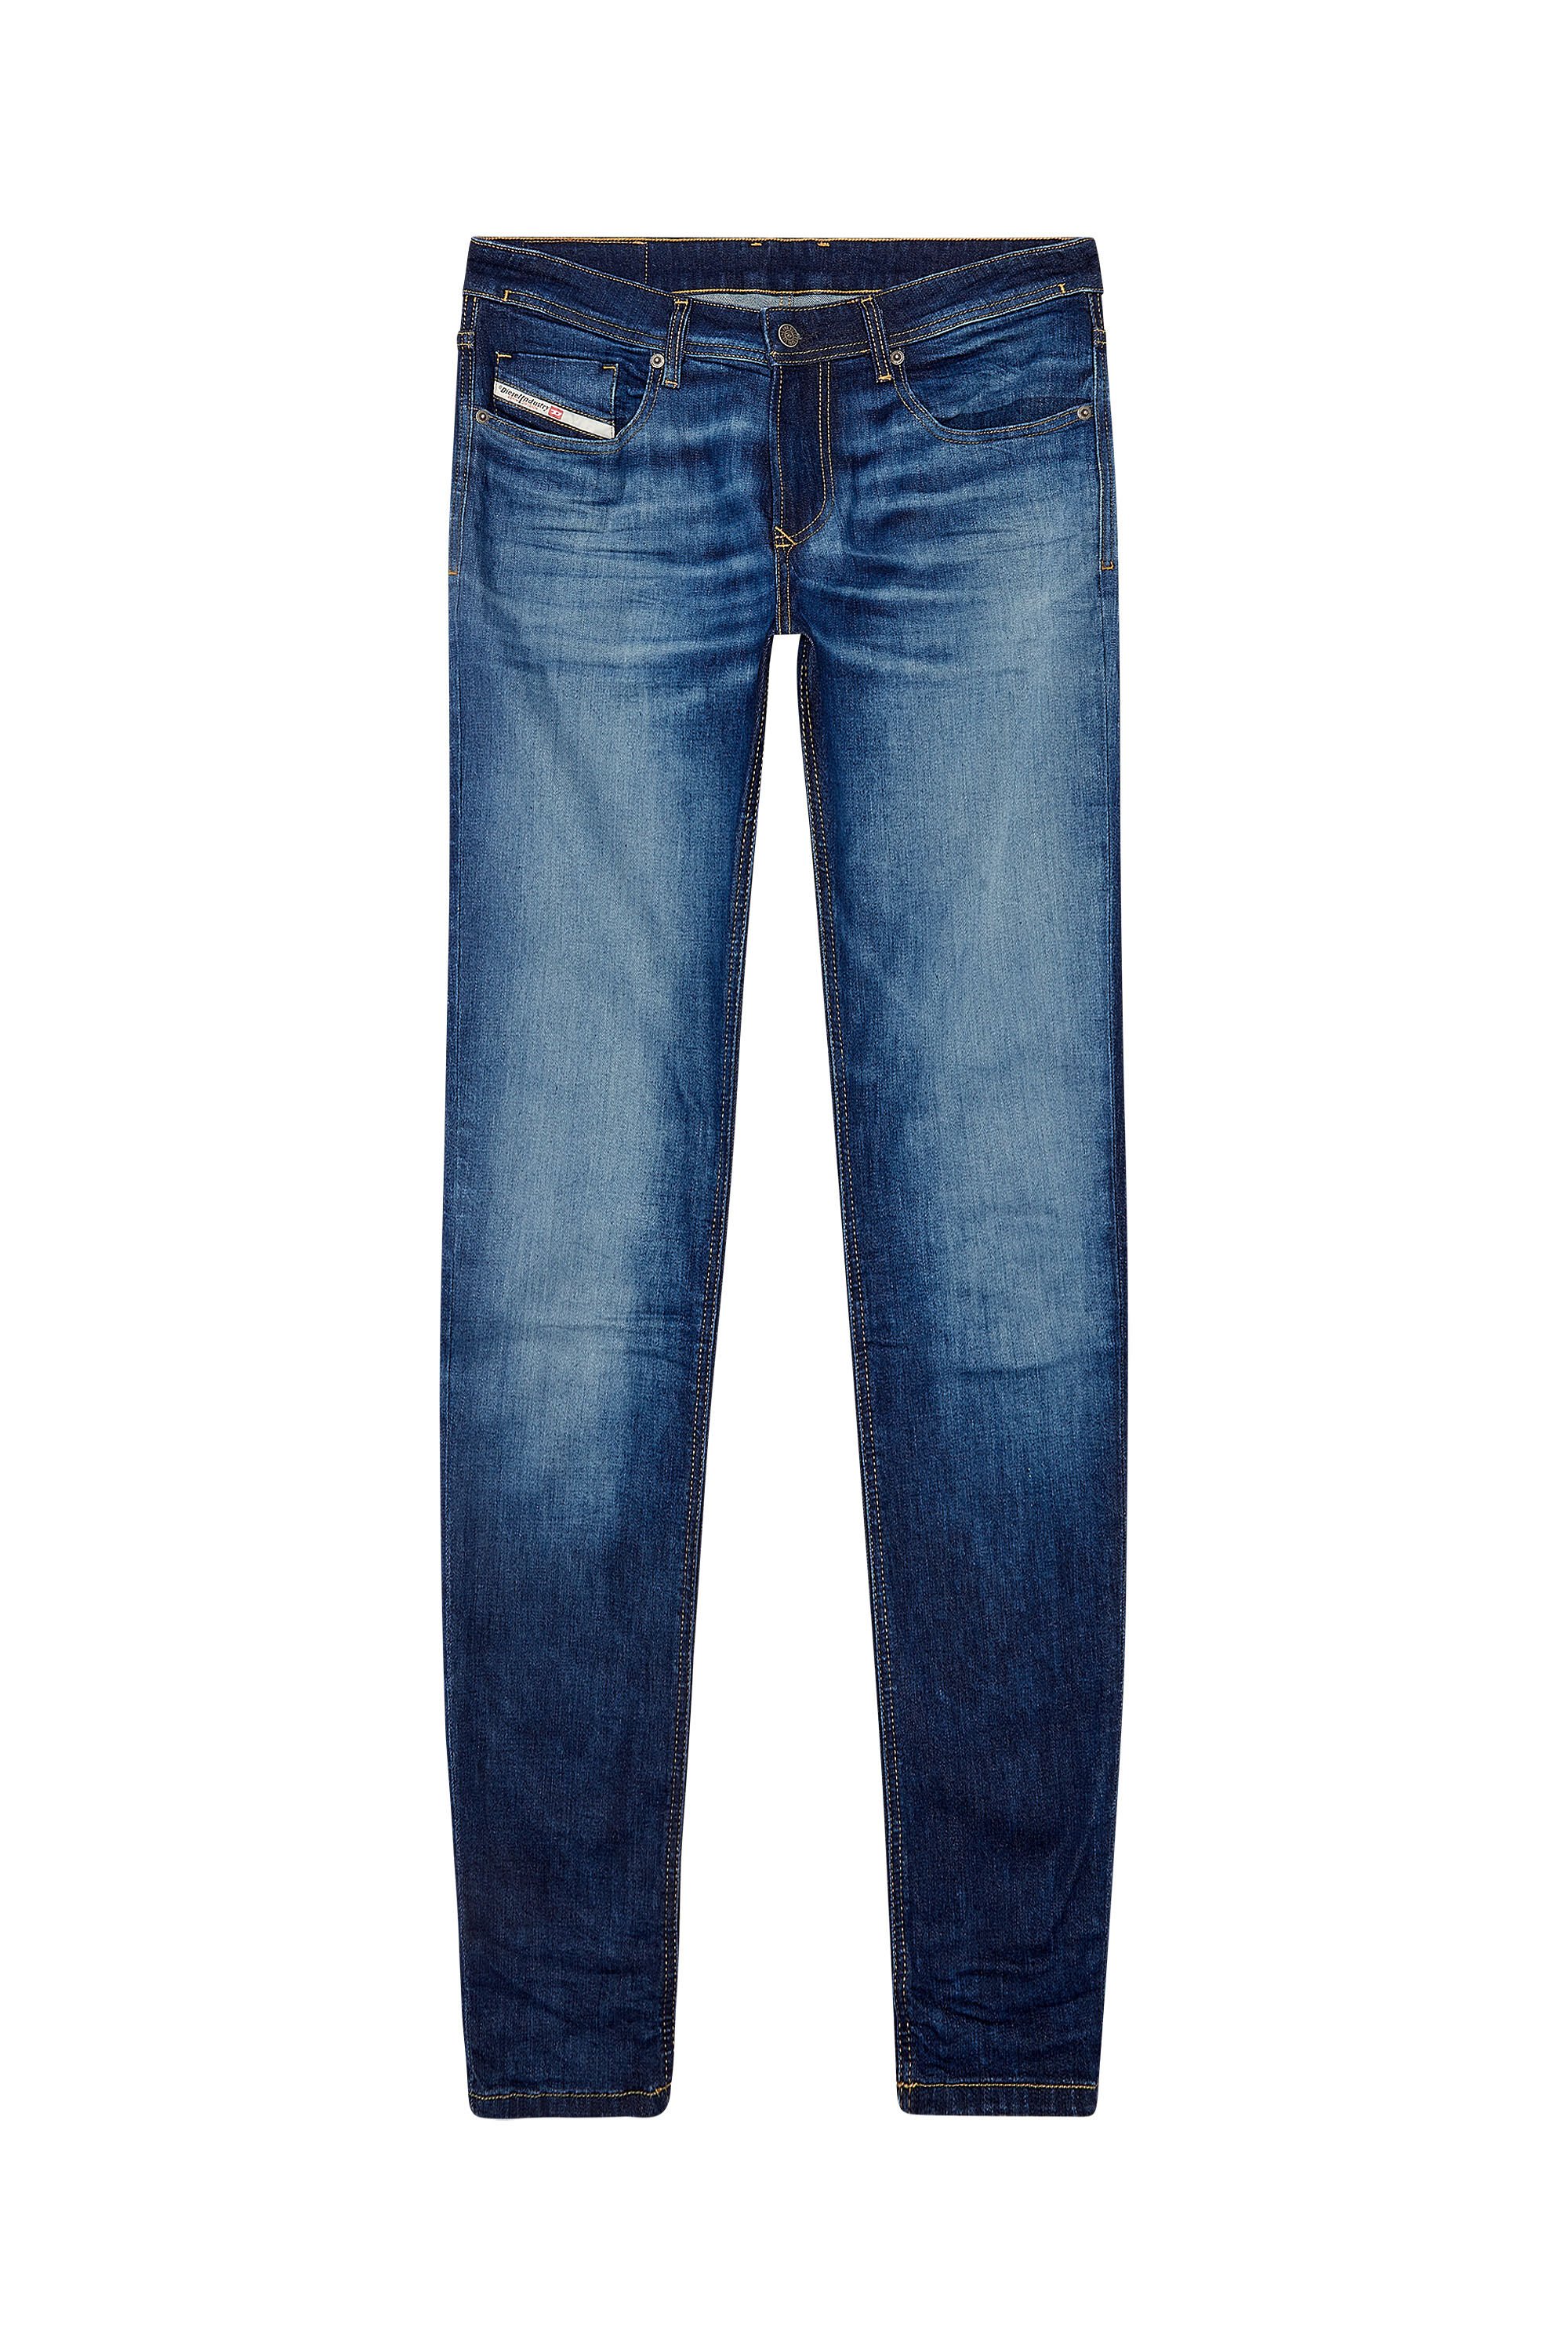 Men's Skinny Jeans | Dark blue | Diesel 1979 Sleenker